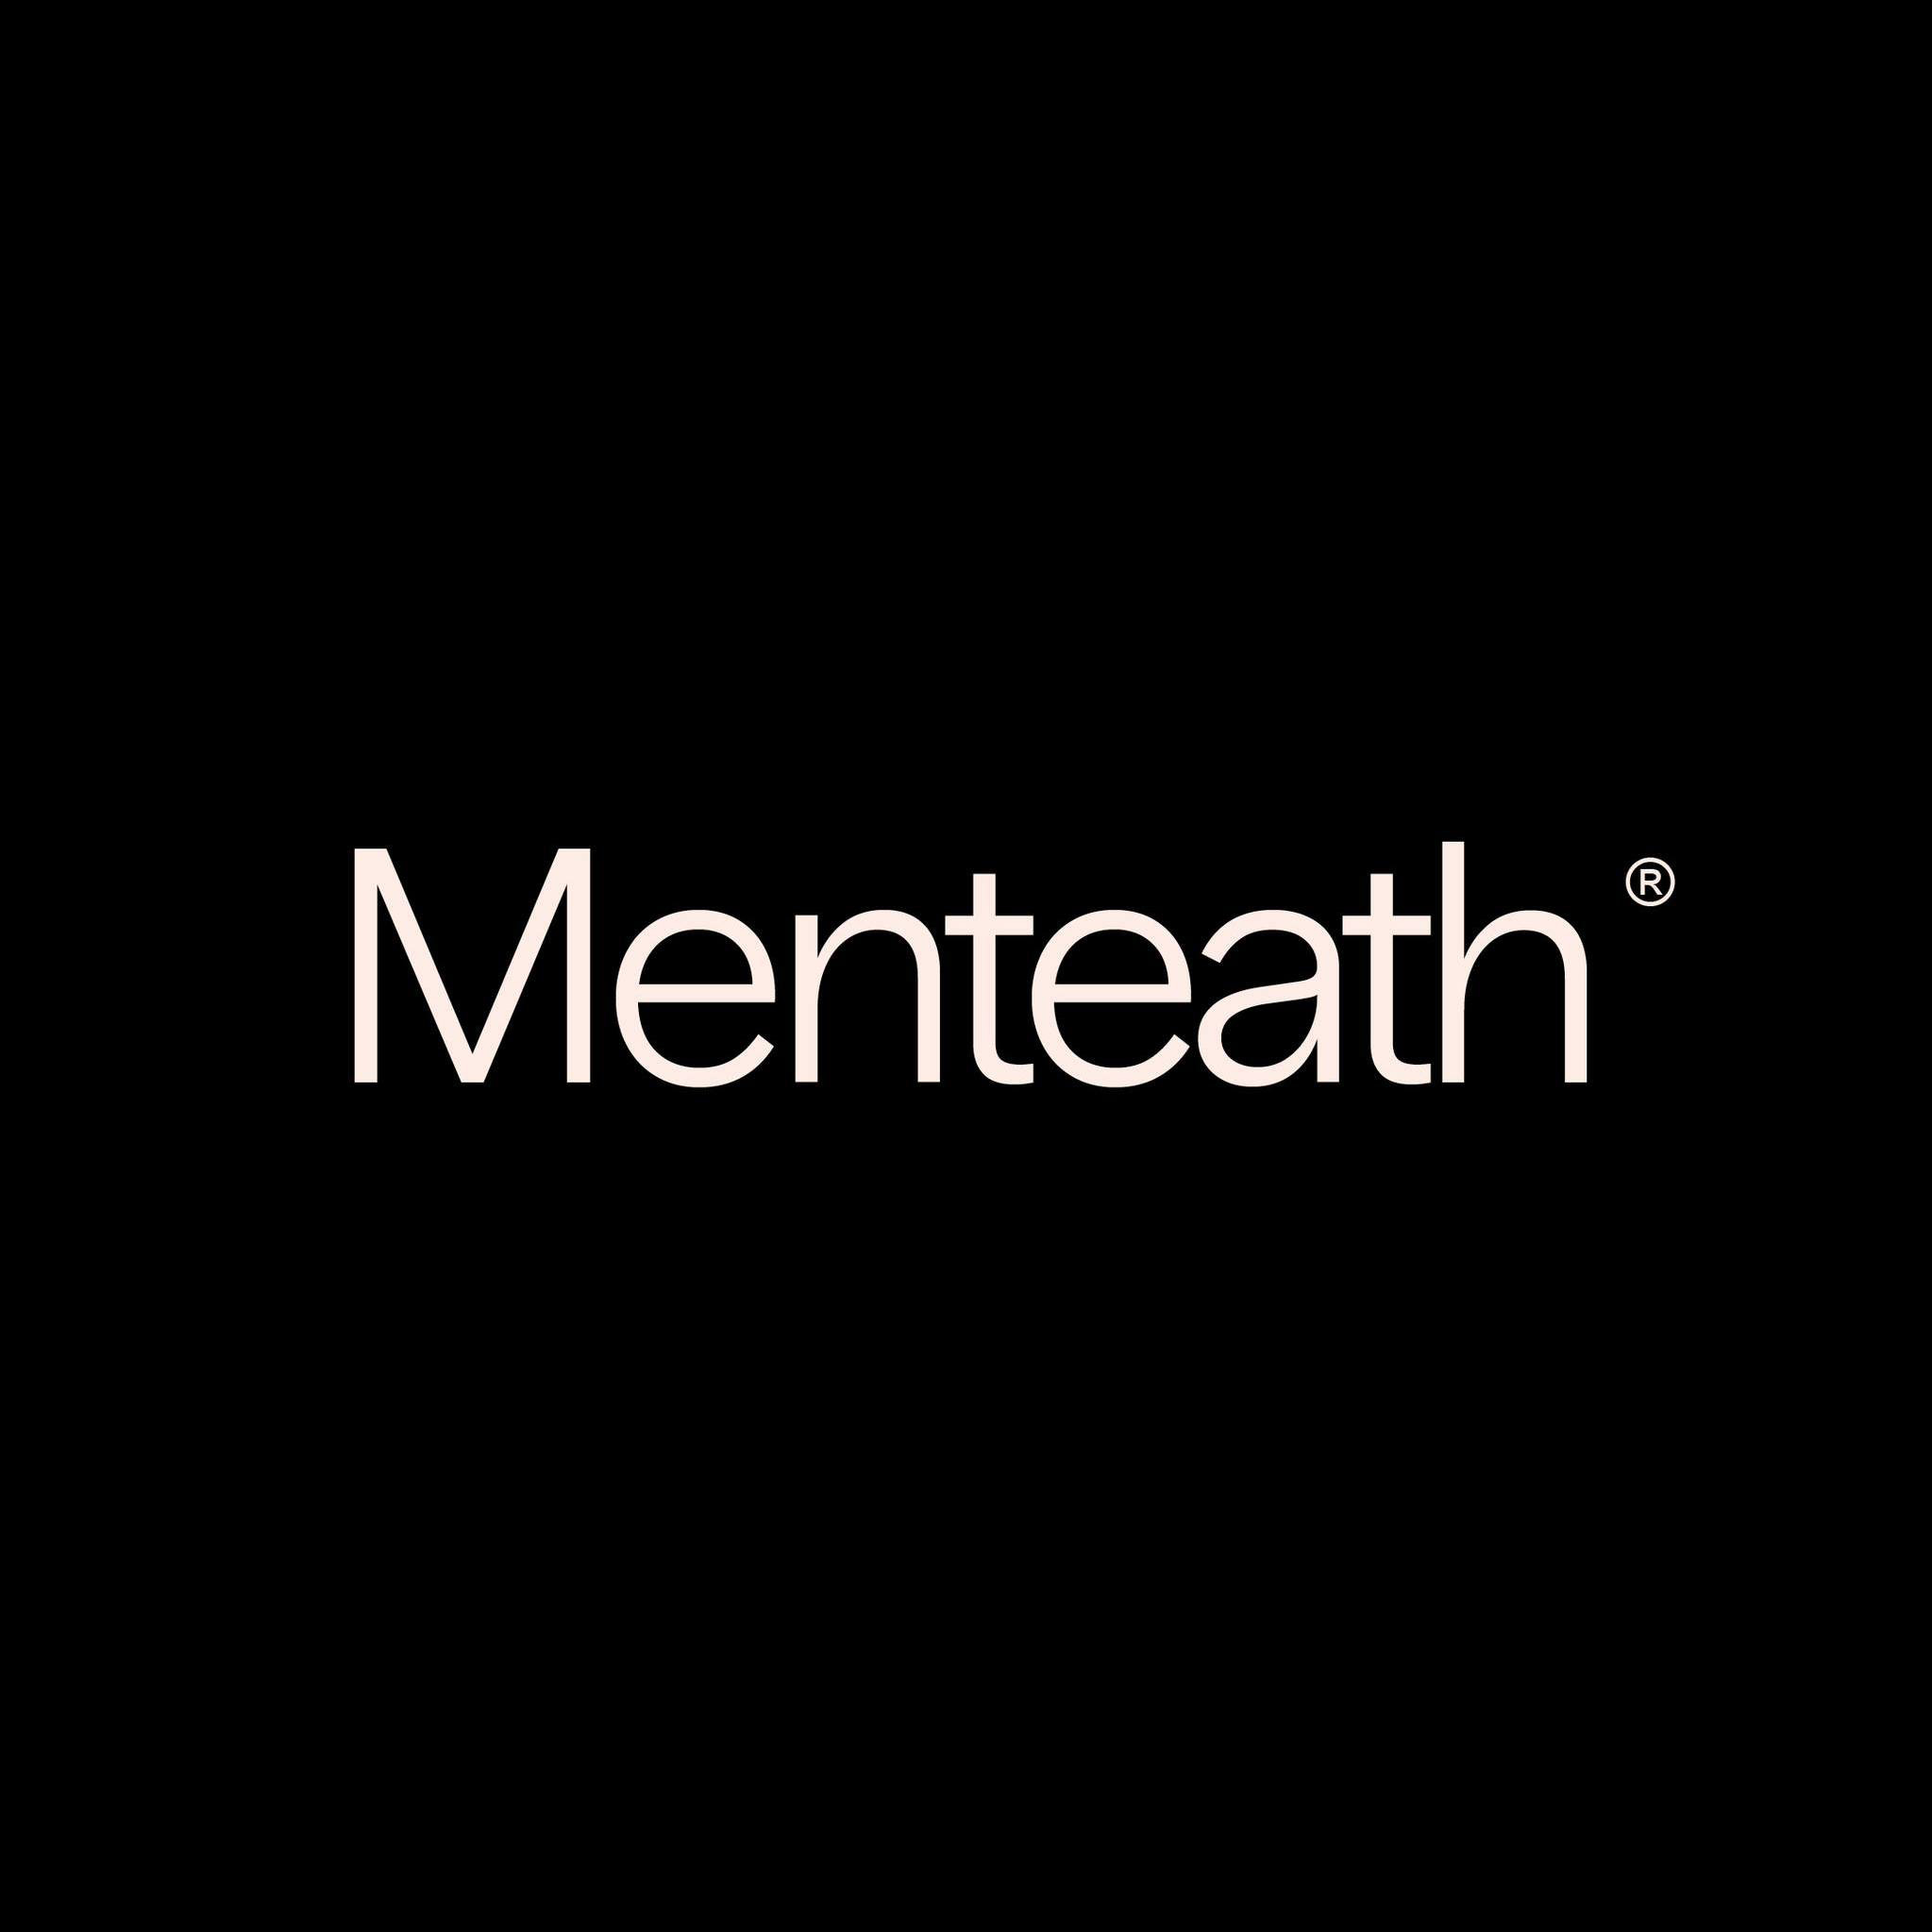 Menteath